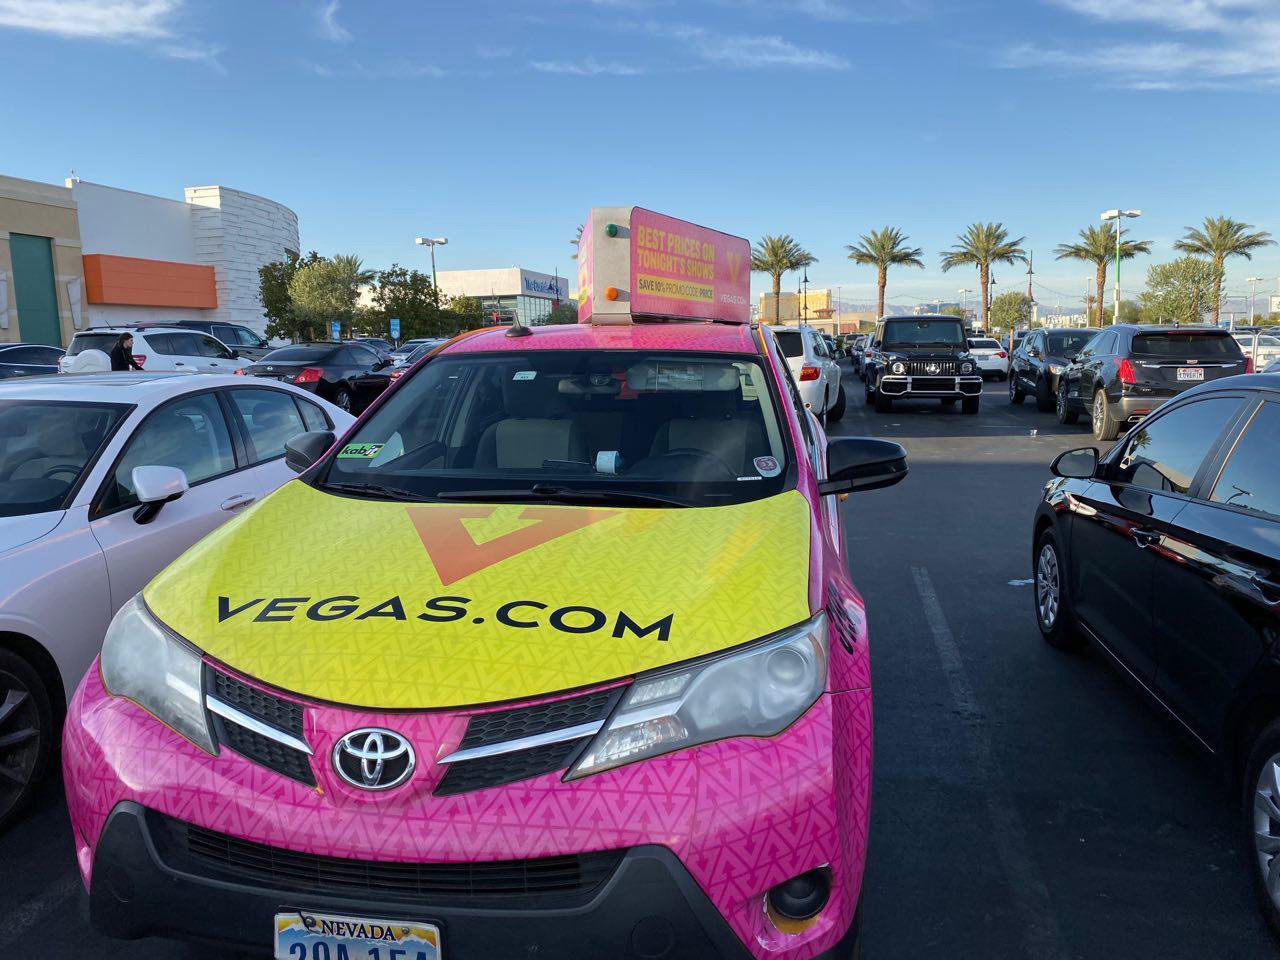 Vegas.com Promo Car